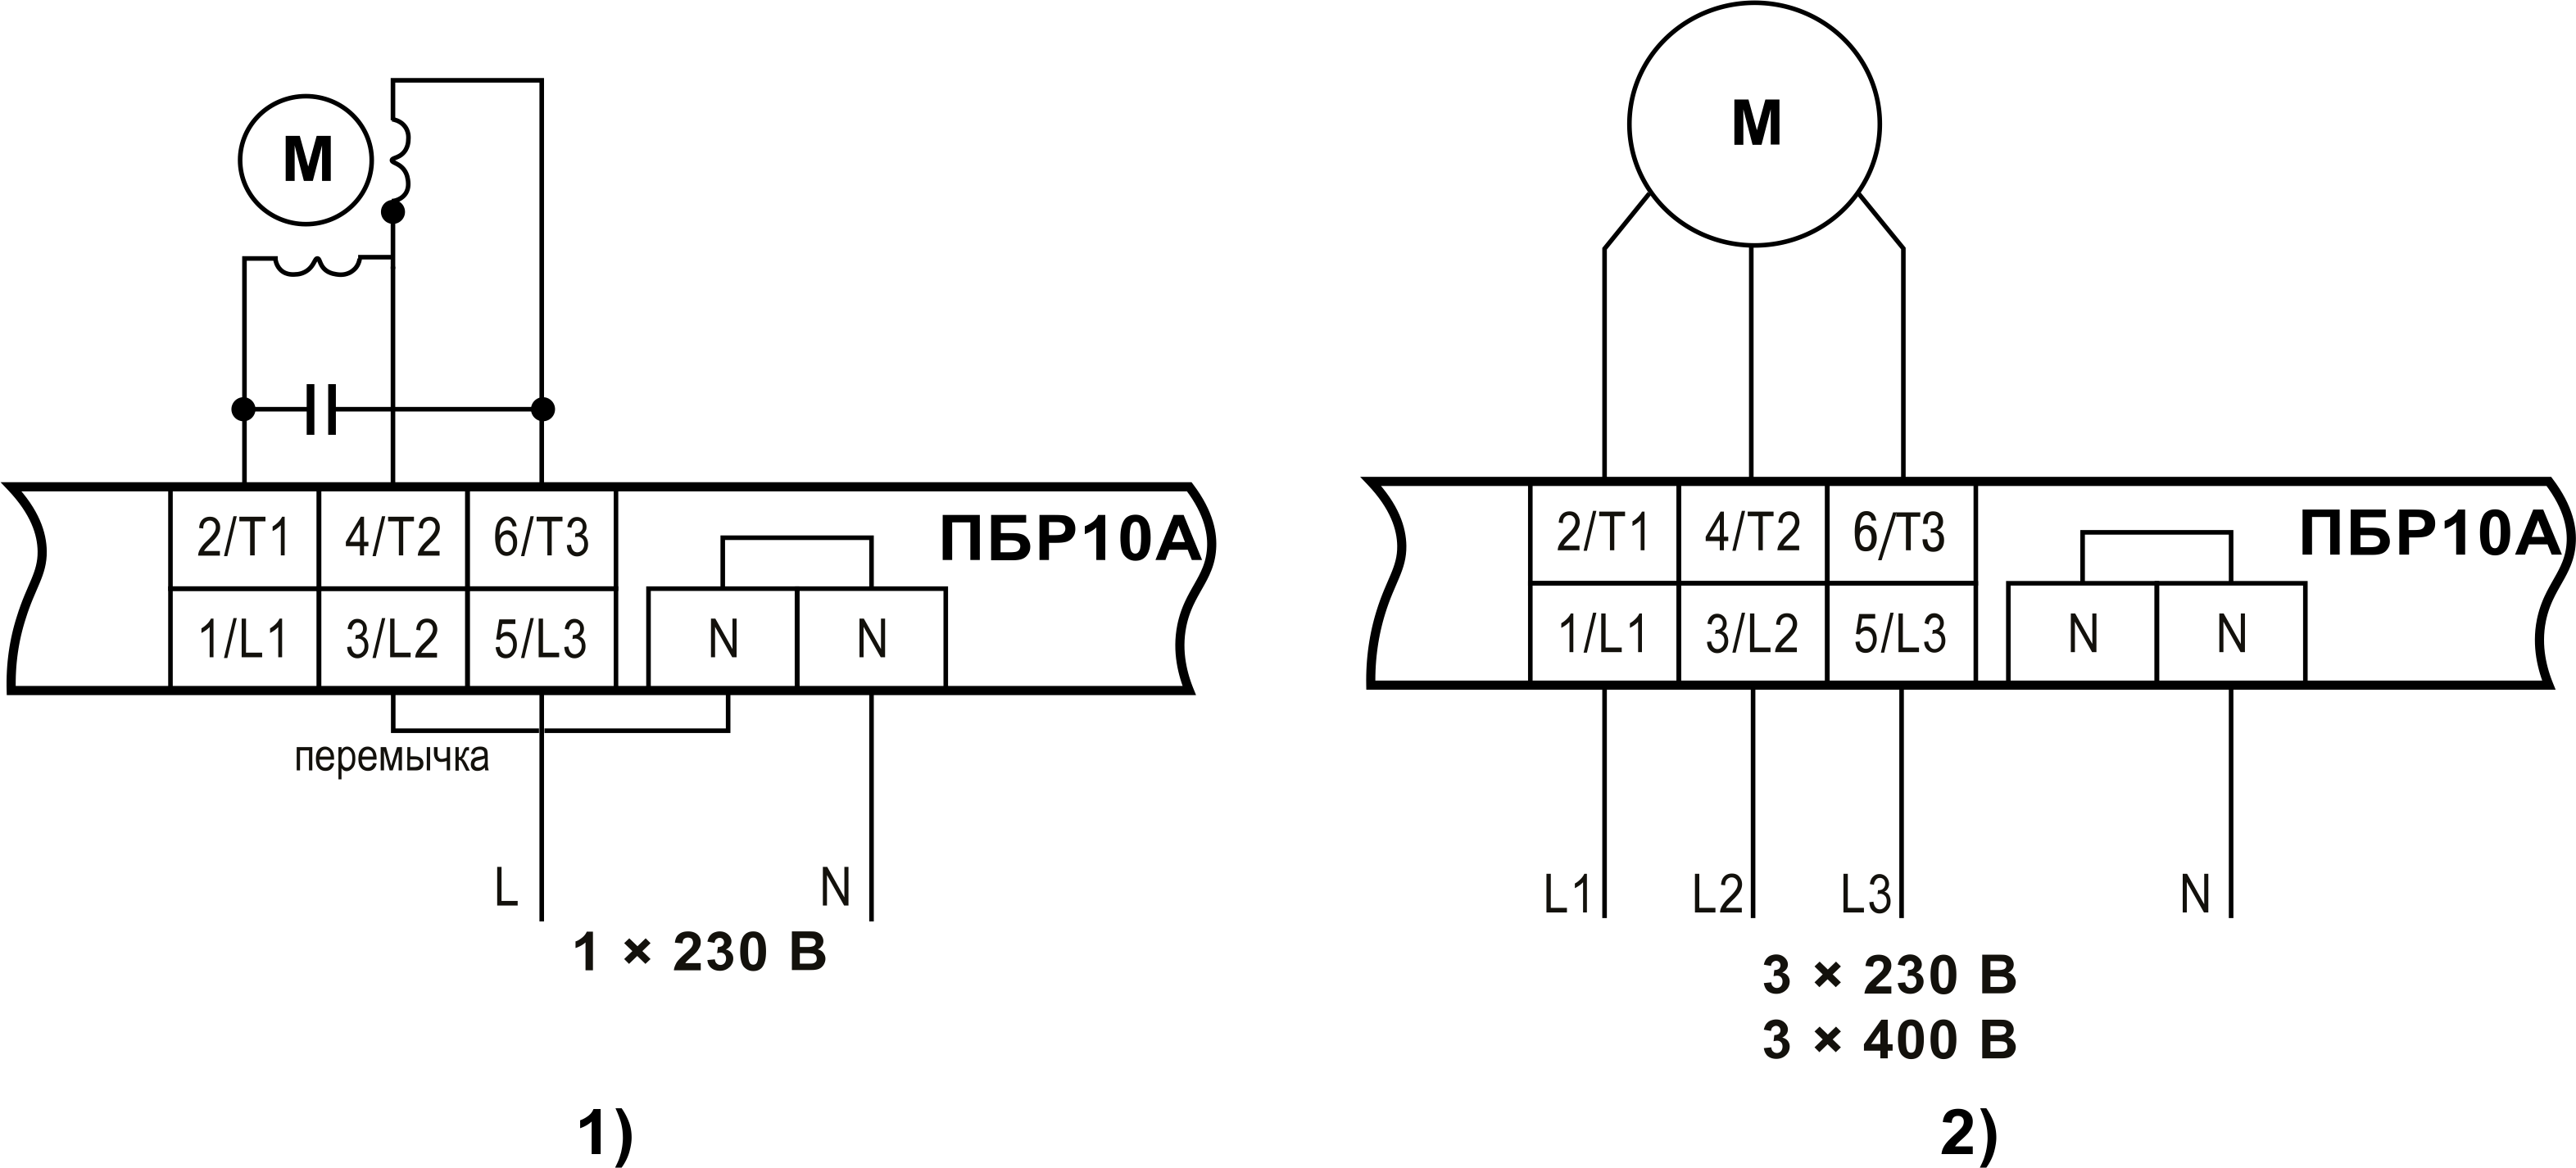 Схемы подключения силовых клеммников при работе с однофазным (1) и трехфазным (2) двигателем - ПБР10А